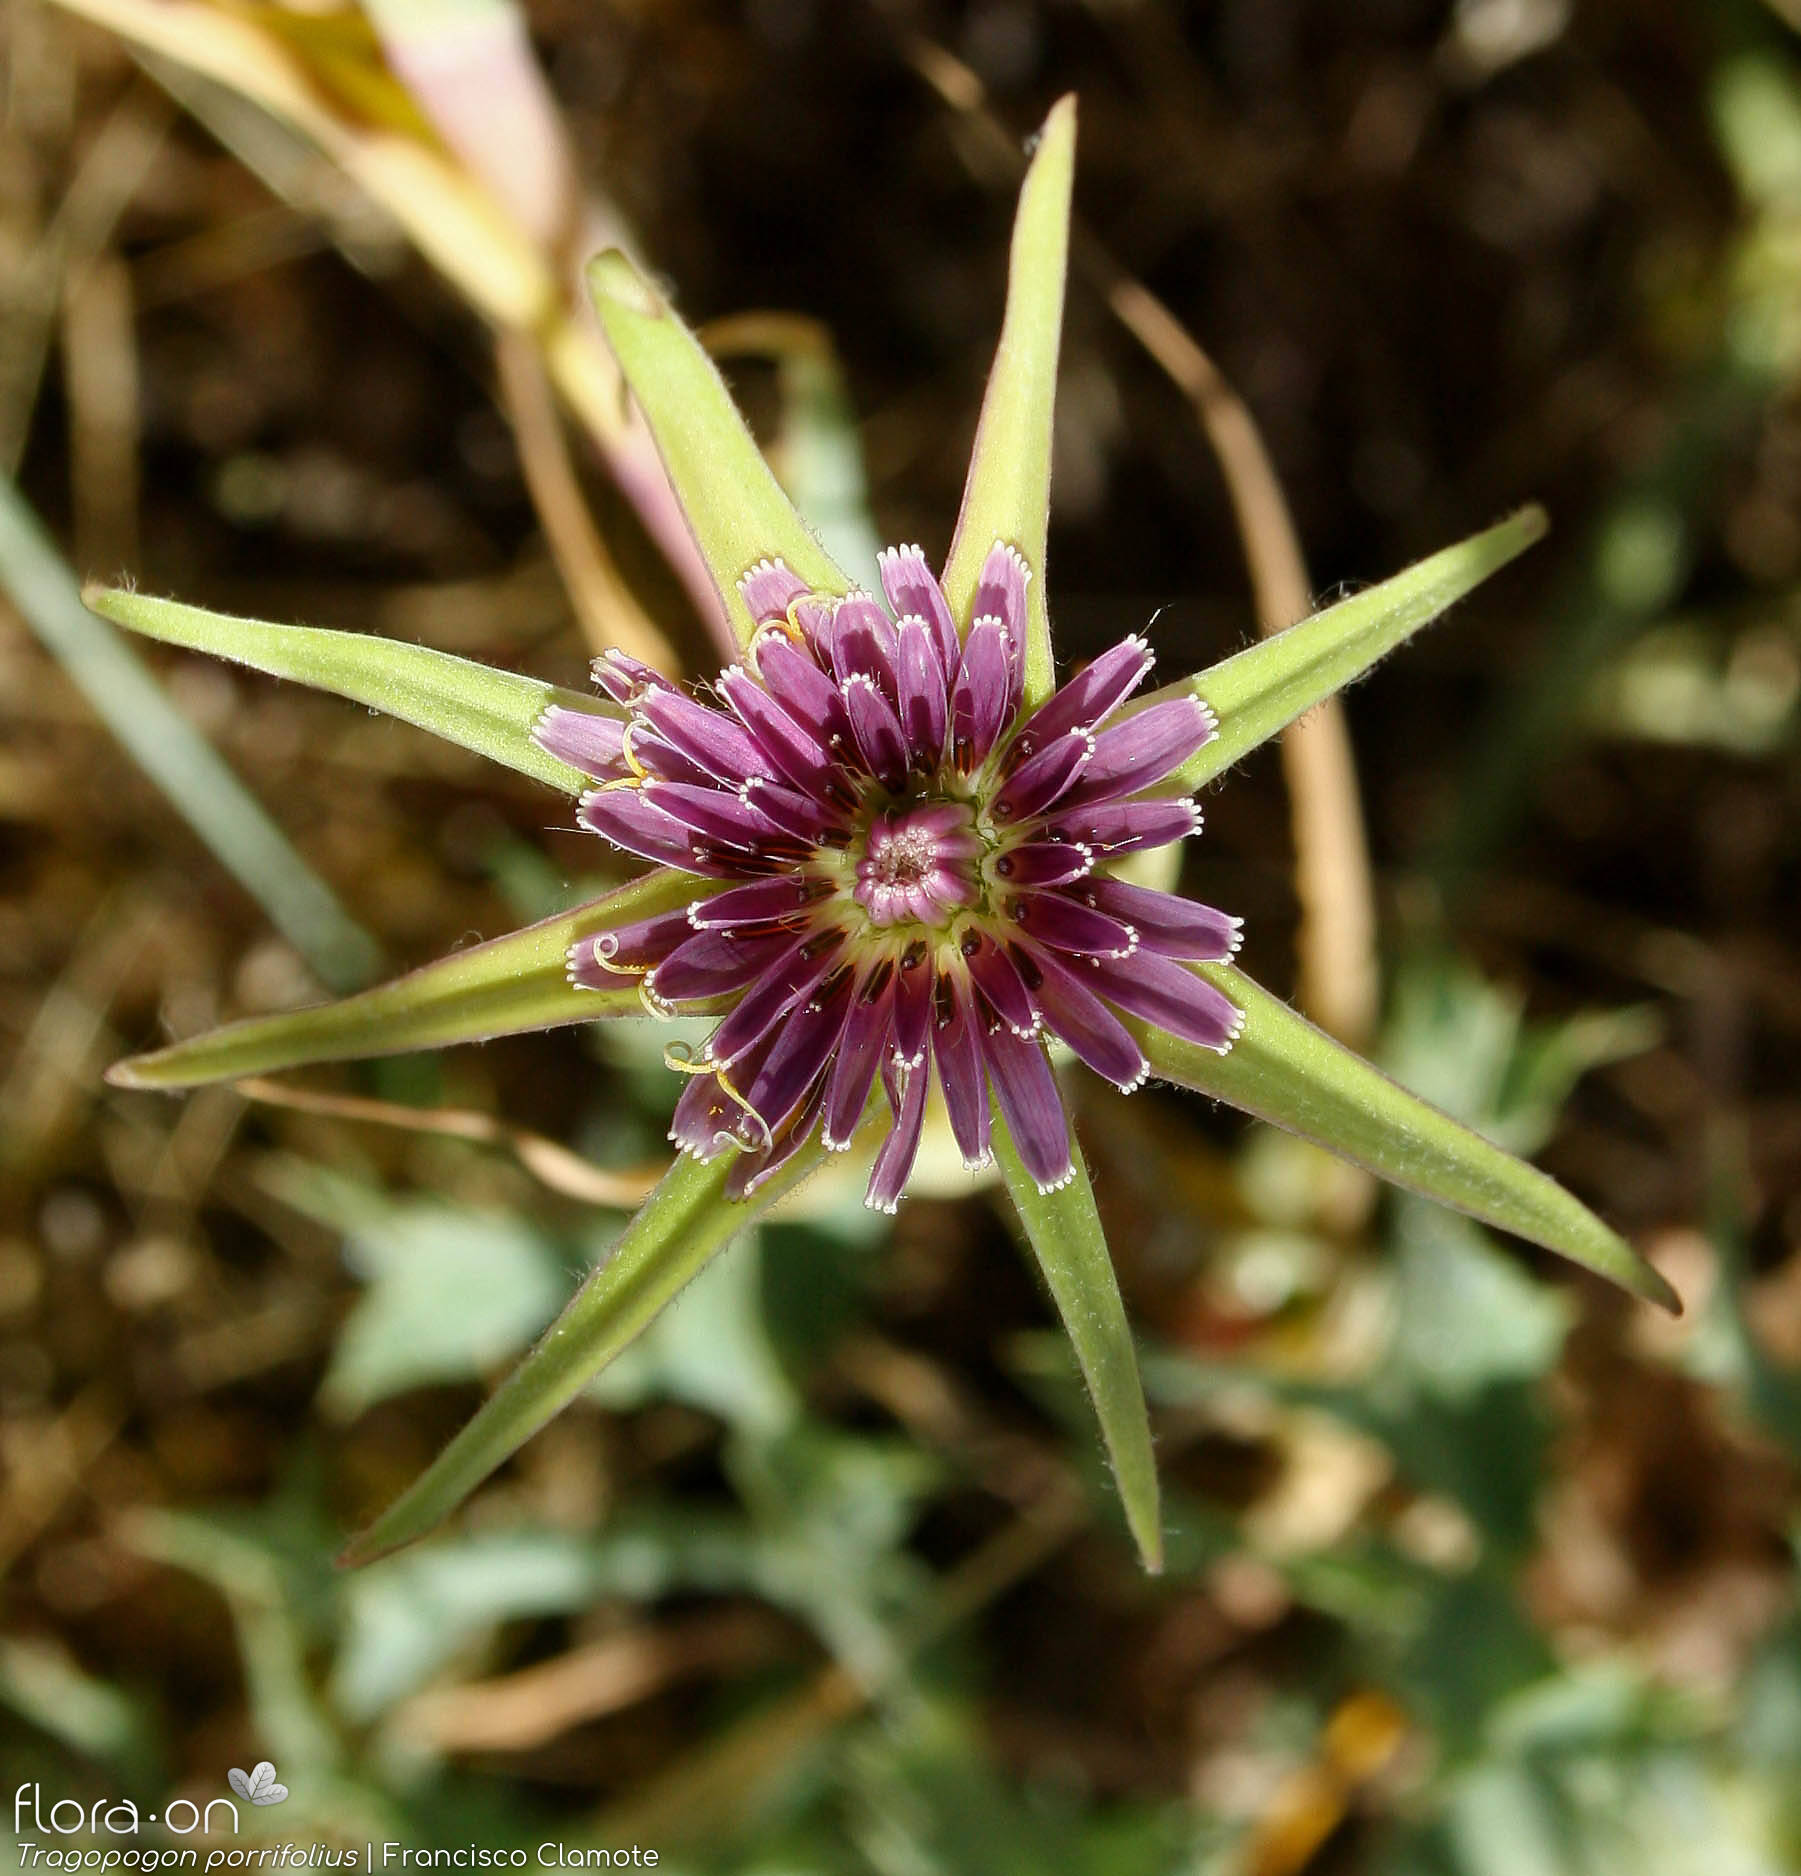 Tragopogon porrifolius - Flor (close-up) | Francisco Clamote; CC BY-NC 4.0